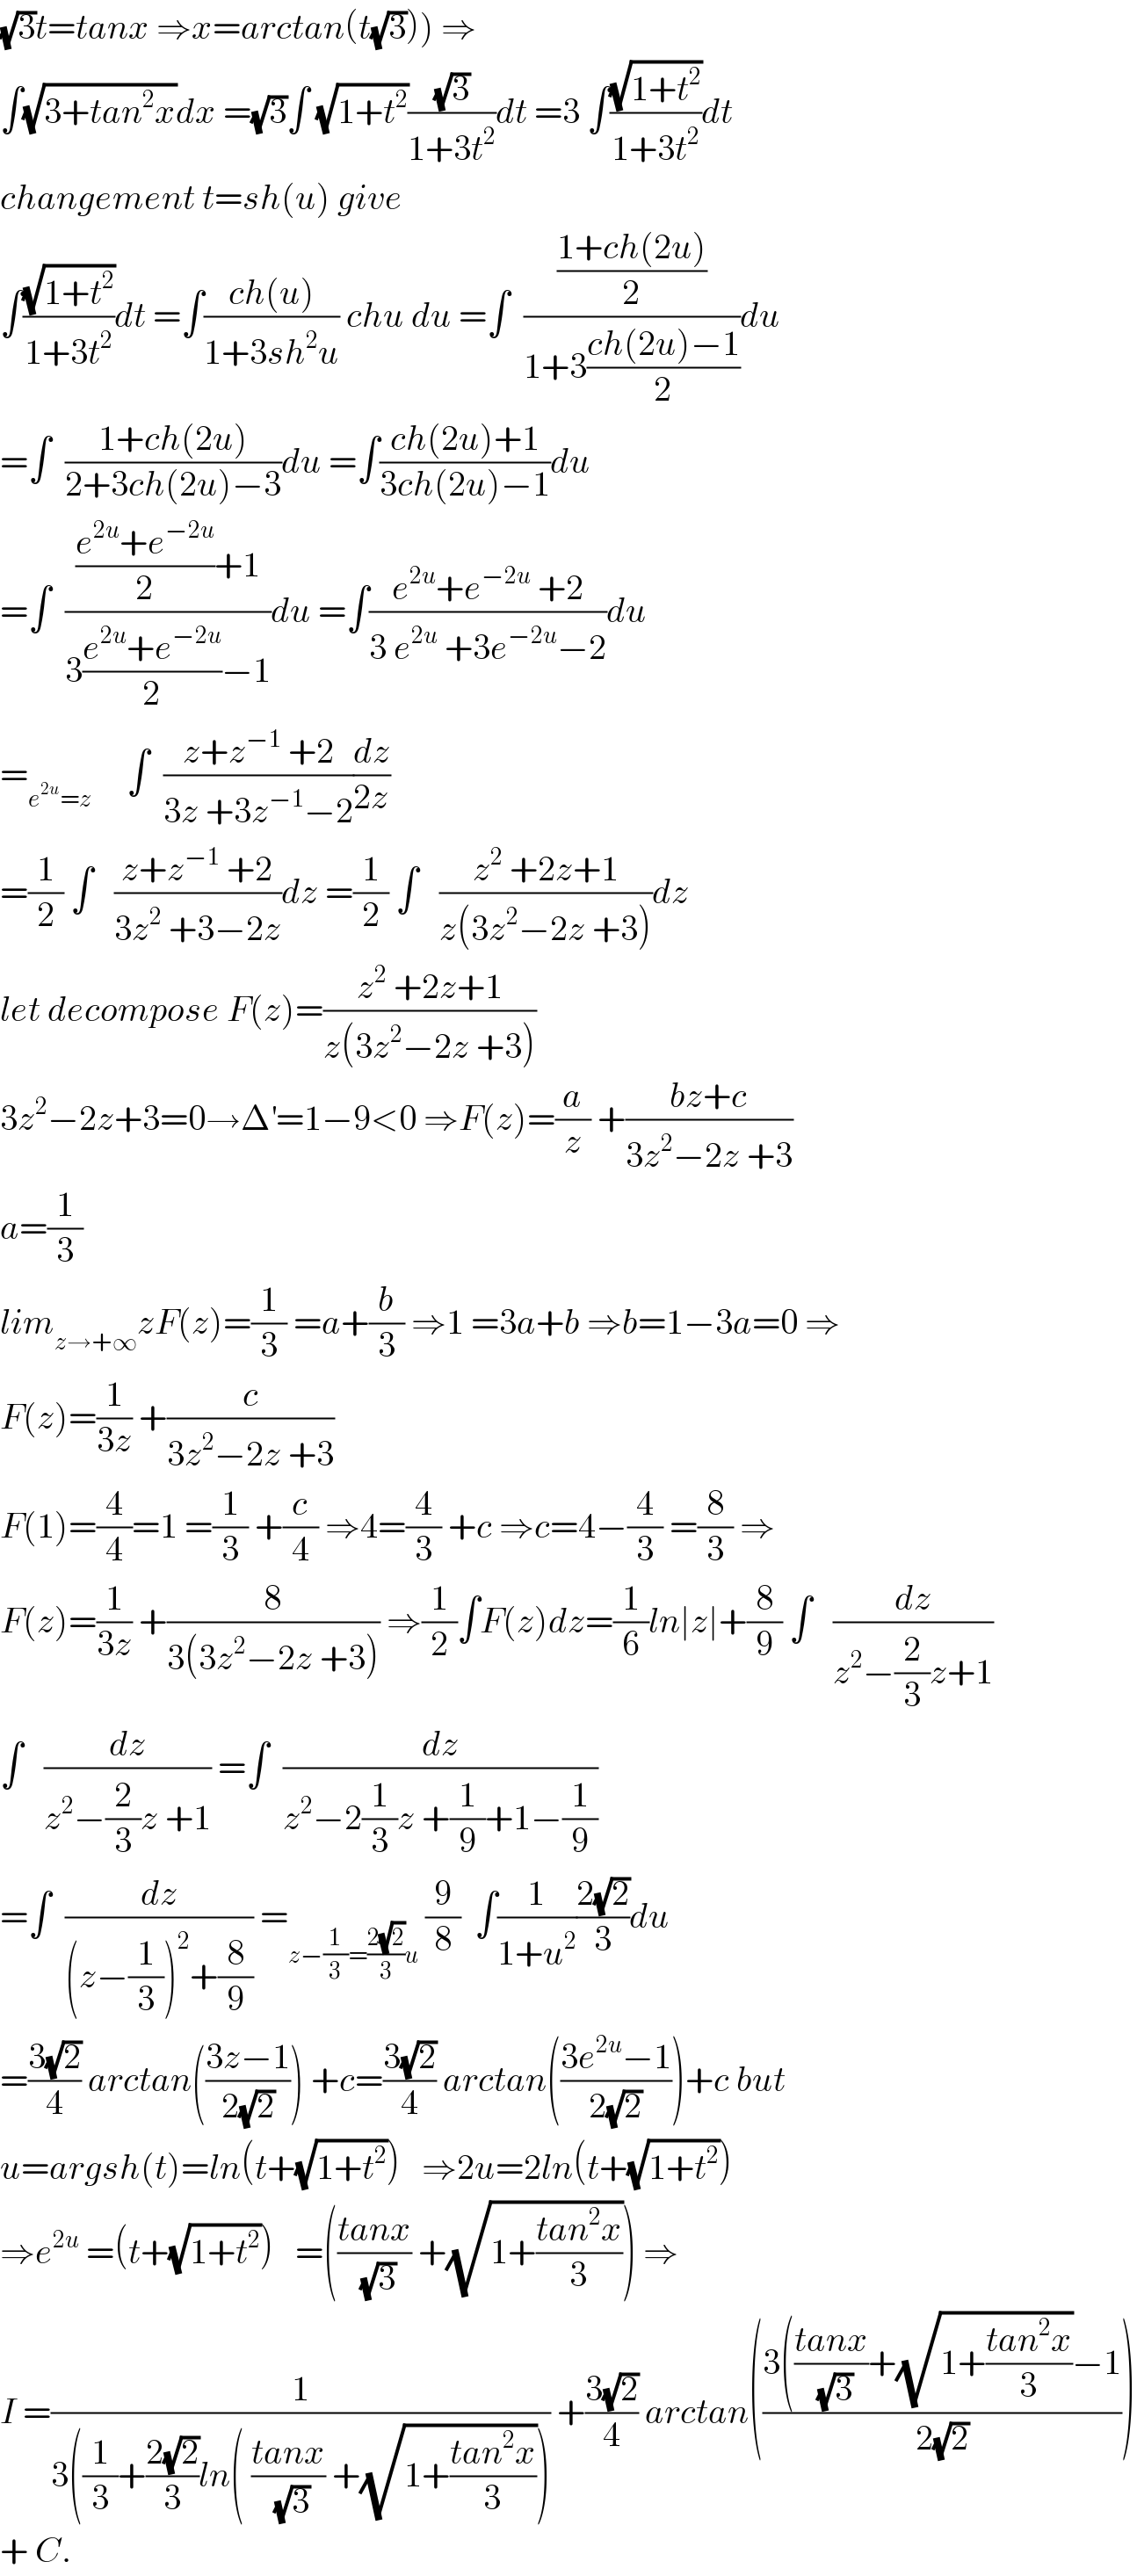 (√3)t=tanx ⇒x=arctan(t(√3))) ⇒  ∫(√(3+tan^2 x))dx =(√3)∫ (√(1+t^2 ))((√3)/(1+3t^2 ))dt =3 ∫((√(1+t^2 ))/(1+3t^2 ))dt  changement t=sh(u) give  ∫((√(1+t^2 ))/(1+3t^2 ))dt =∫((ch(u))/(1+3sh^2 u)) chu du =∫  (((1+ch(2u))/2)/(1+3((ch(2u)−1)/2)))du  =∫  ((1+ch(2u))/(2+3ch(2u)−3))du =∫((ch(2u)+1)/(3ch(2u)−1))du  =∫  ((((e^(2u) +e^(−2u) )/2)+1)/(3((e^(2u) +e^(−2u) )/2)−1))du =∫((e^(2u) +e^(−2u)  +2)/(3 e^(2u)  +3e^(−2u) −2))du  =_(e^(2u) =z)      ∫  ((z+z^(−1)  +2)/(3z +3z^(−1) −2))(dz/(2z))  =(1/2) ∫   ((z+z^(−1)  +2)/(3z^2  +3−2z))dz =(1/2) ∫   ((z^2  +2z+1)/(z(3z^2 −2z +3)))dz  let decompose F(z)=((z^2  +2z+1)/(z(3z^2 −2z +3)))  3z^2 −2z+3=0→Δ^′ =1−9<0 ⇒F(z)=(a/z) +((bz+c)/(3z^2 −2z +3))  a=(1/3)  lim_(z→+∞) zF(z)=(1/3) =a+(b/3) ⇒1 =3a+b ⇒b=1−3a=0 ⇒  F(z)=(1/(3z)) +(c/(3z^2 −2z +3))  F(1)=(4/4)=1 =(1/3) +(c/4) ⇒4=(4/3) +c ⇒c=4−(4/3) =(8/3) ⇒  F(z)=(1/(3z)) +(8/(3(3z^2 −2z +3))) ⇒(1/2)∫F(z)dz=(1/6)ln∣z∣+(8/9) ∫   (dz/(z^2 −(2/3)z+1))  ∫   (dz/(z^2 −(2/3)z +1)) =∫  (dz/(z^2 −2(1/3)z +(1/9)+1−(1/9)))  =∫  (dz/((z−(1/3))^2 +(8/9))) =_(z−(1/3)=((2(√2))/3)u)  (9/8)  ∫(1/(1+u^2 ))((2(√2))/3)du  =((3(√2))/4) arctan(((3z−1)/(2(√2)))) +c=((3(√2))/4) arctan(((3e^(2u) −1)/(2(√2))))+c but  u=argsh(t)=ln(t+(√(1+t^2 )))   ⇒2u=2ln(t+(√(1+t^2 )))  ⇒e^(2u)  =(t+(√(1+t^2 )))   =(((tanx)/(√3)) +(√(1+((tan^2 x)/3)))) ⇒  I =(1/(3((1/3)+((2(√2))/3)ln( ((tanx)/(√3)) +(√(1+((tan^2 x)/3)))))) +((3(√2))/4) arctan(((3(((tanx)/(√3))+(√(1+((tan^2 x)/3)))−1)/(2(√2))))  + C.  